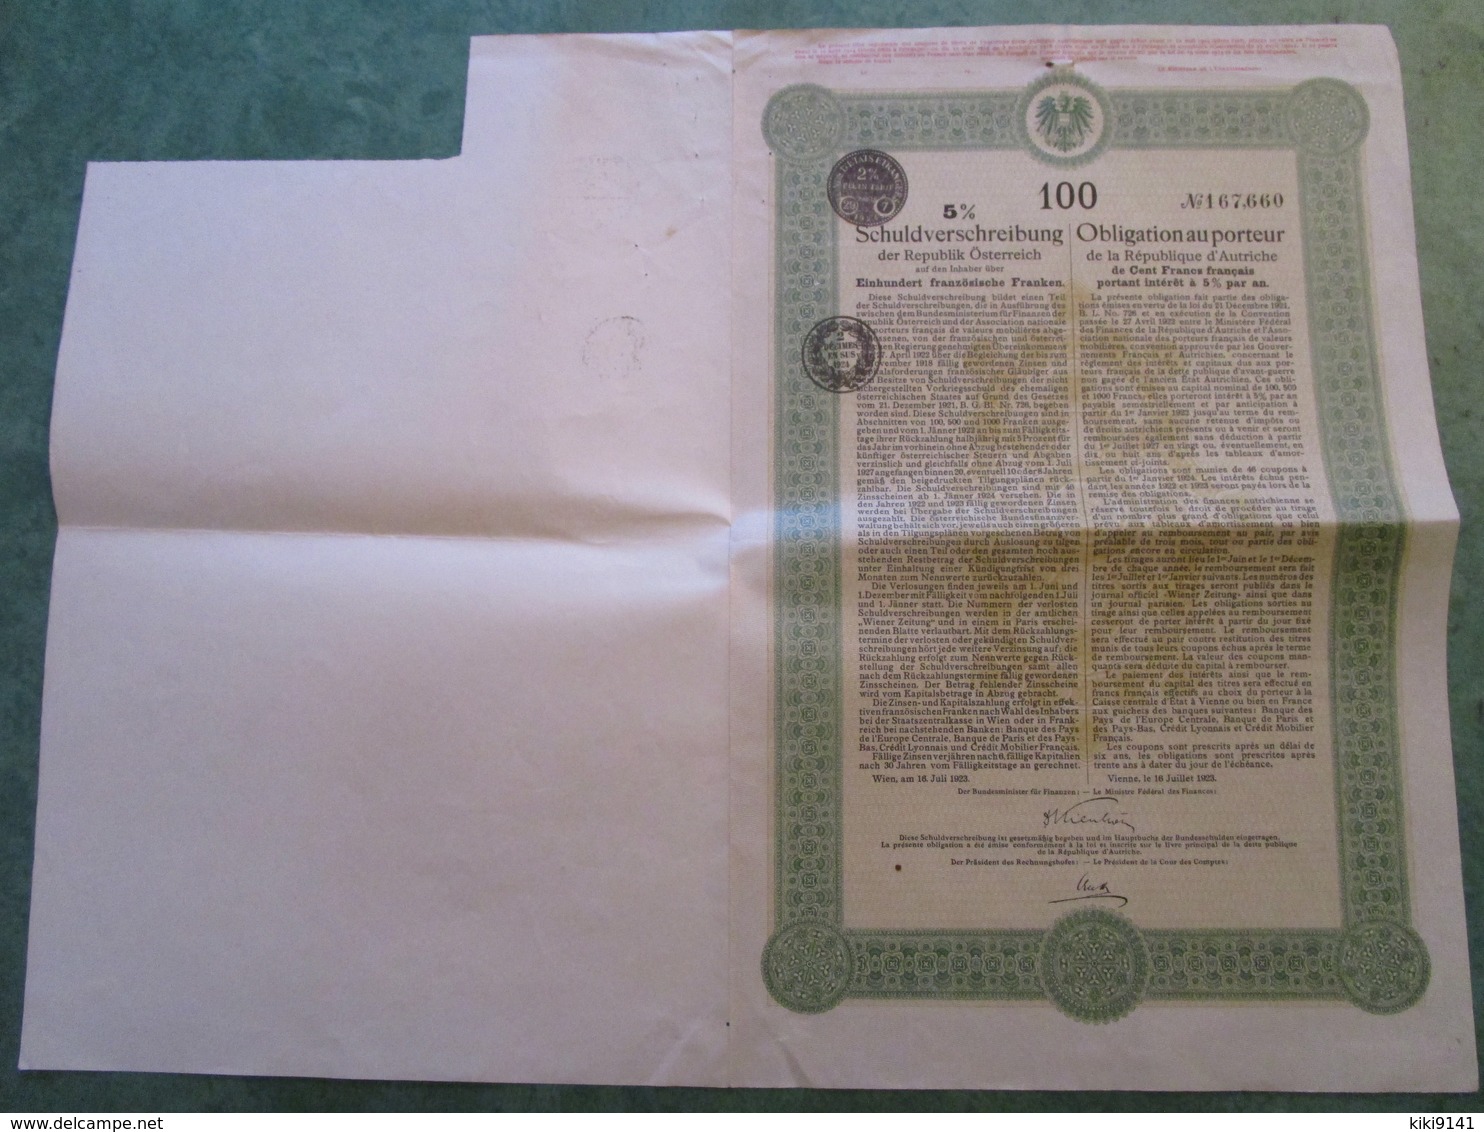 EMPRUNT FUNDING AUTRICHIEN - Obligation Au Porteur De 100 Francs N°167.660 (3 Documents) - A - C